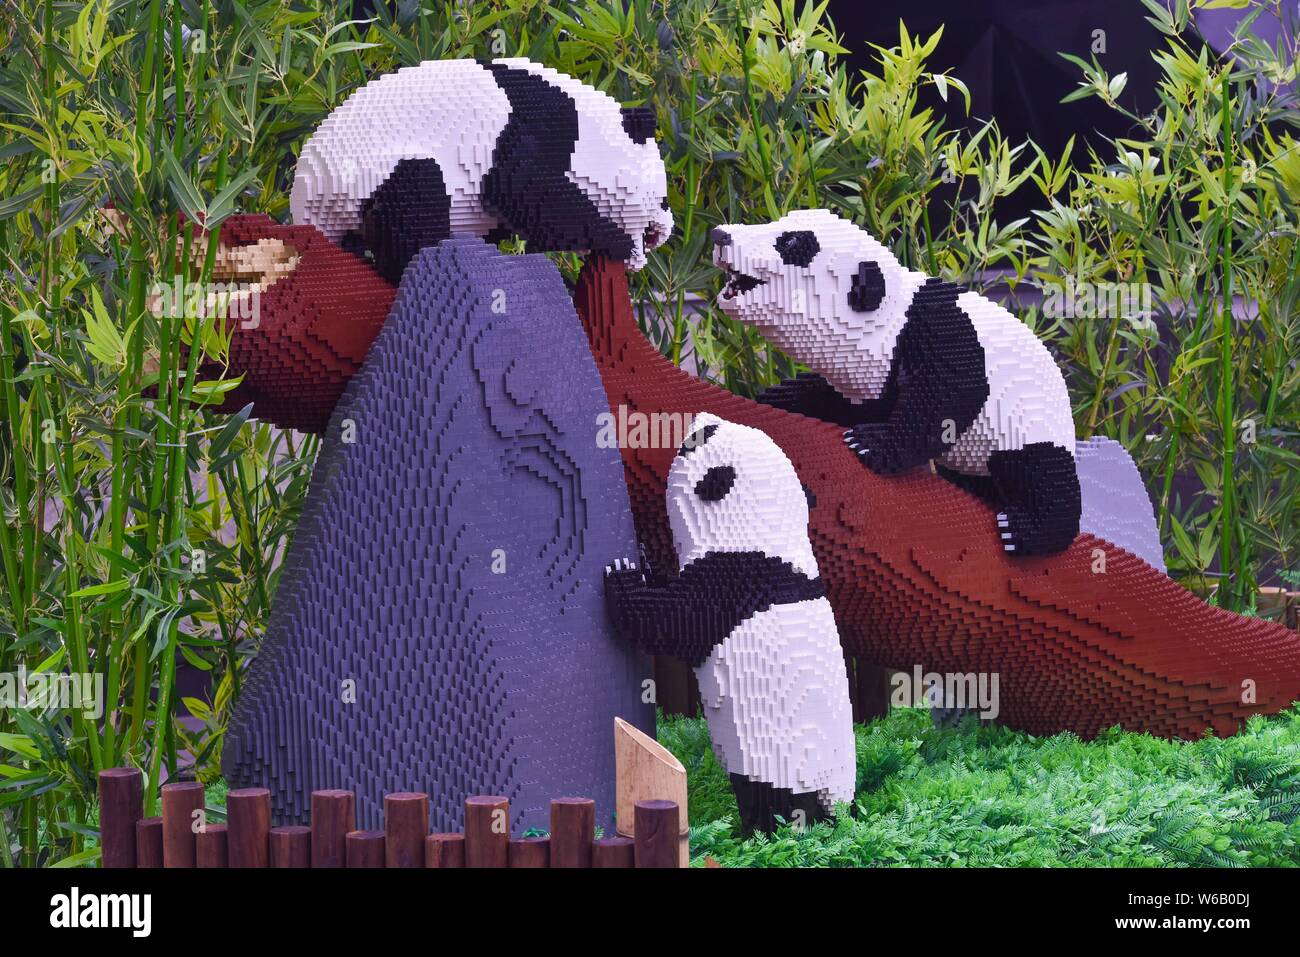 Esculturas de Lego de pandas gigantes creados por el artista, con sede en  Nueva York, Sean Kenney están en exhibición durante la "naturaleza conecta"  exposición en el Lego Chengd Fotografía de stock -